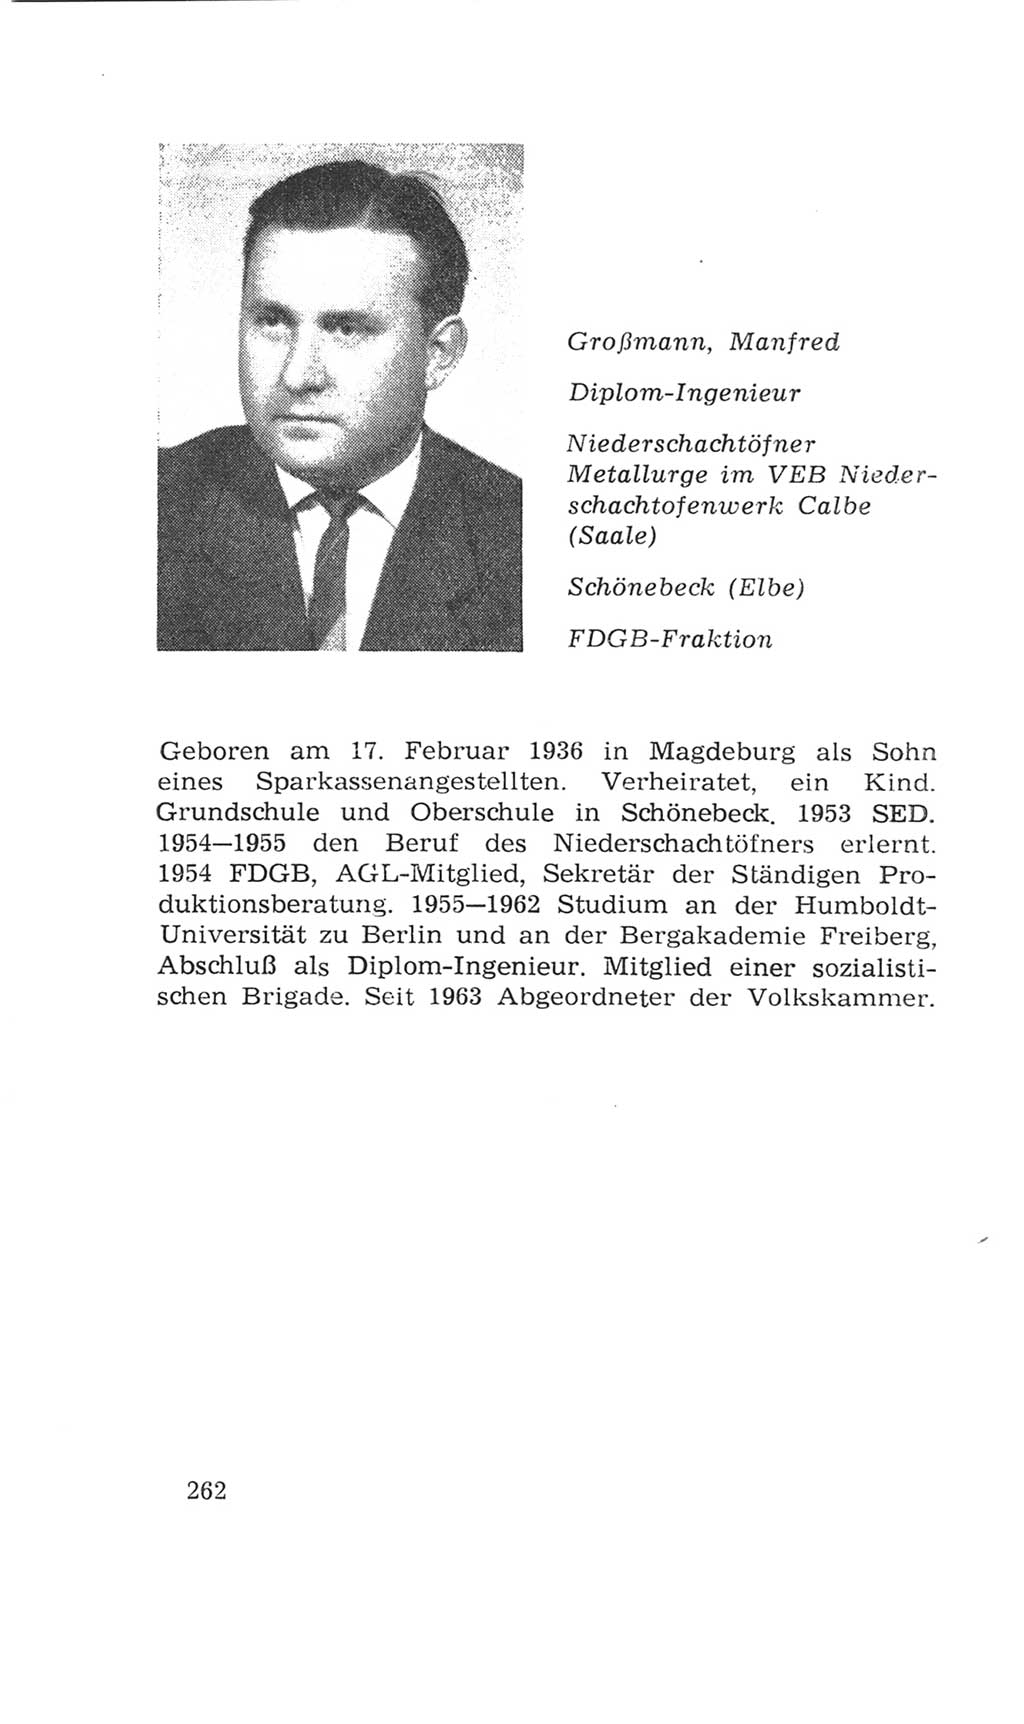 Volkskammer (VK) der Deutschen Demokratischen Republik (DDR), 4. Wahlperiode 1963-1967, Seite 262 (VK. DDR 4. WP. 1963-1967, S. 262)